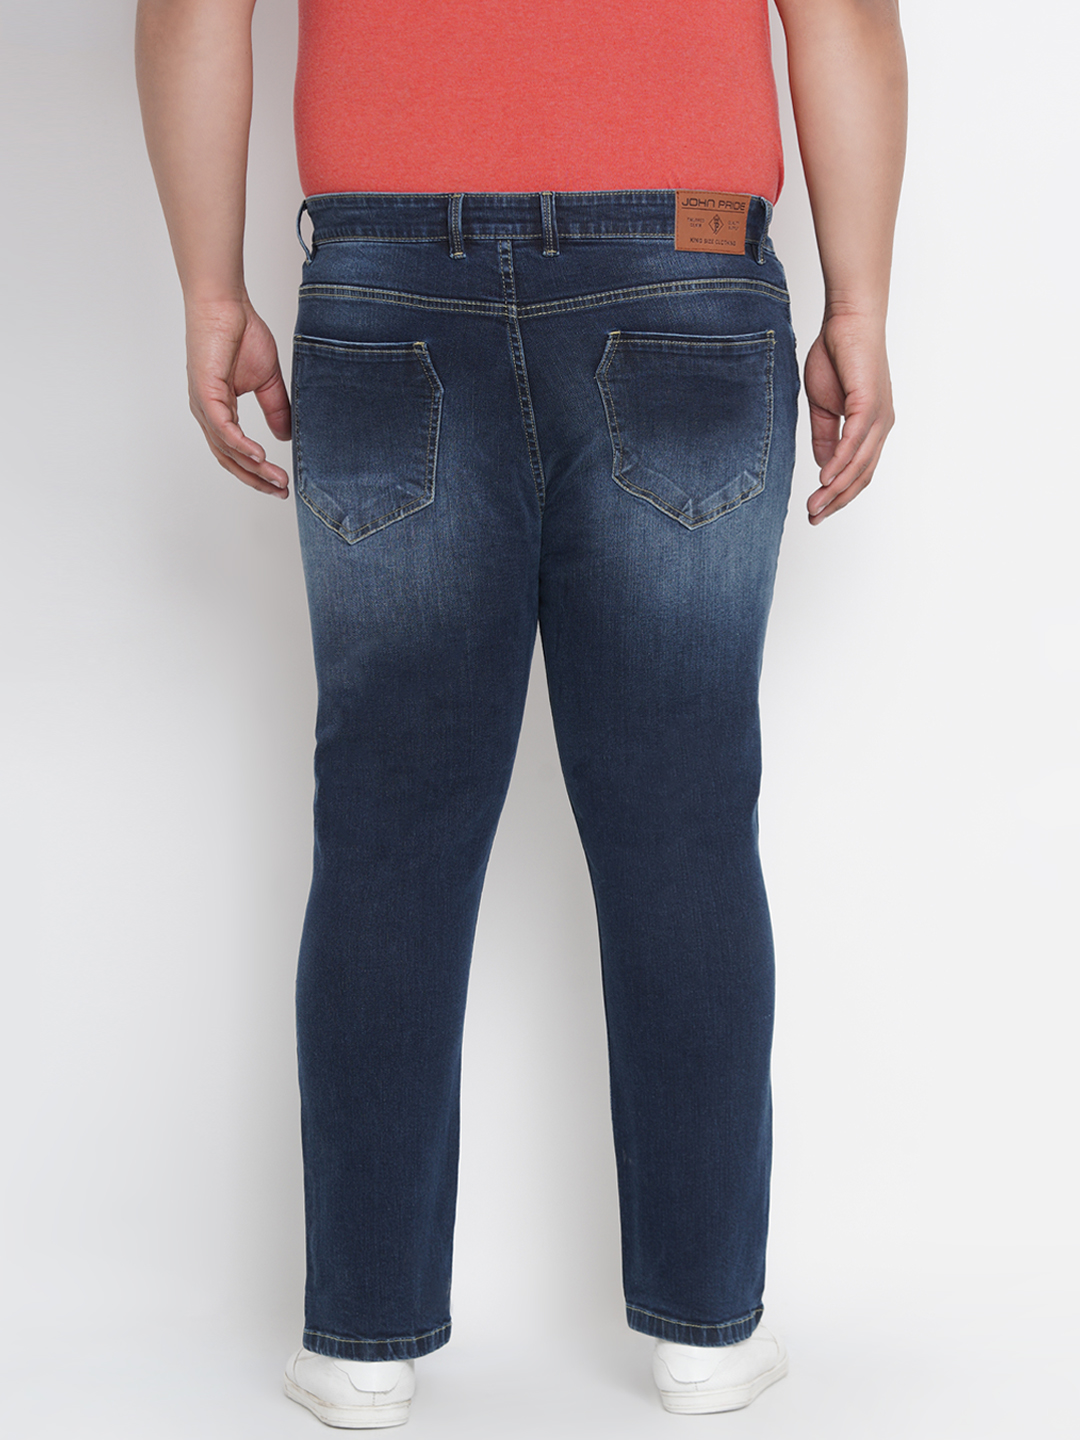 bottomwear/jeans/BEPLJPJ1263/bepljpj1263-5.jpg